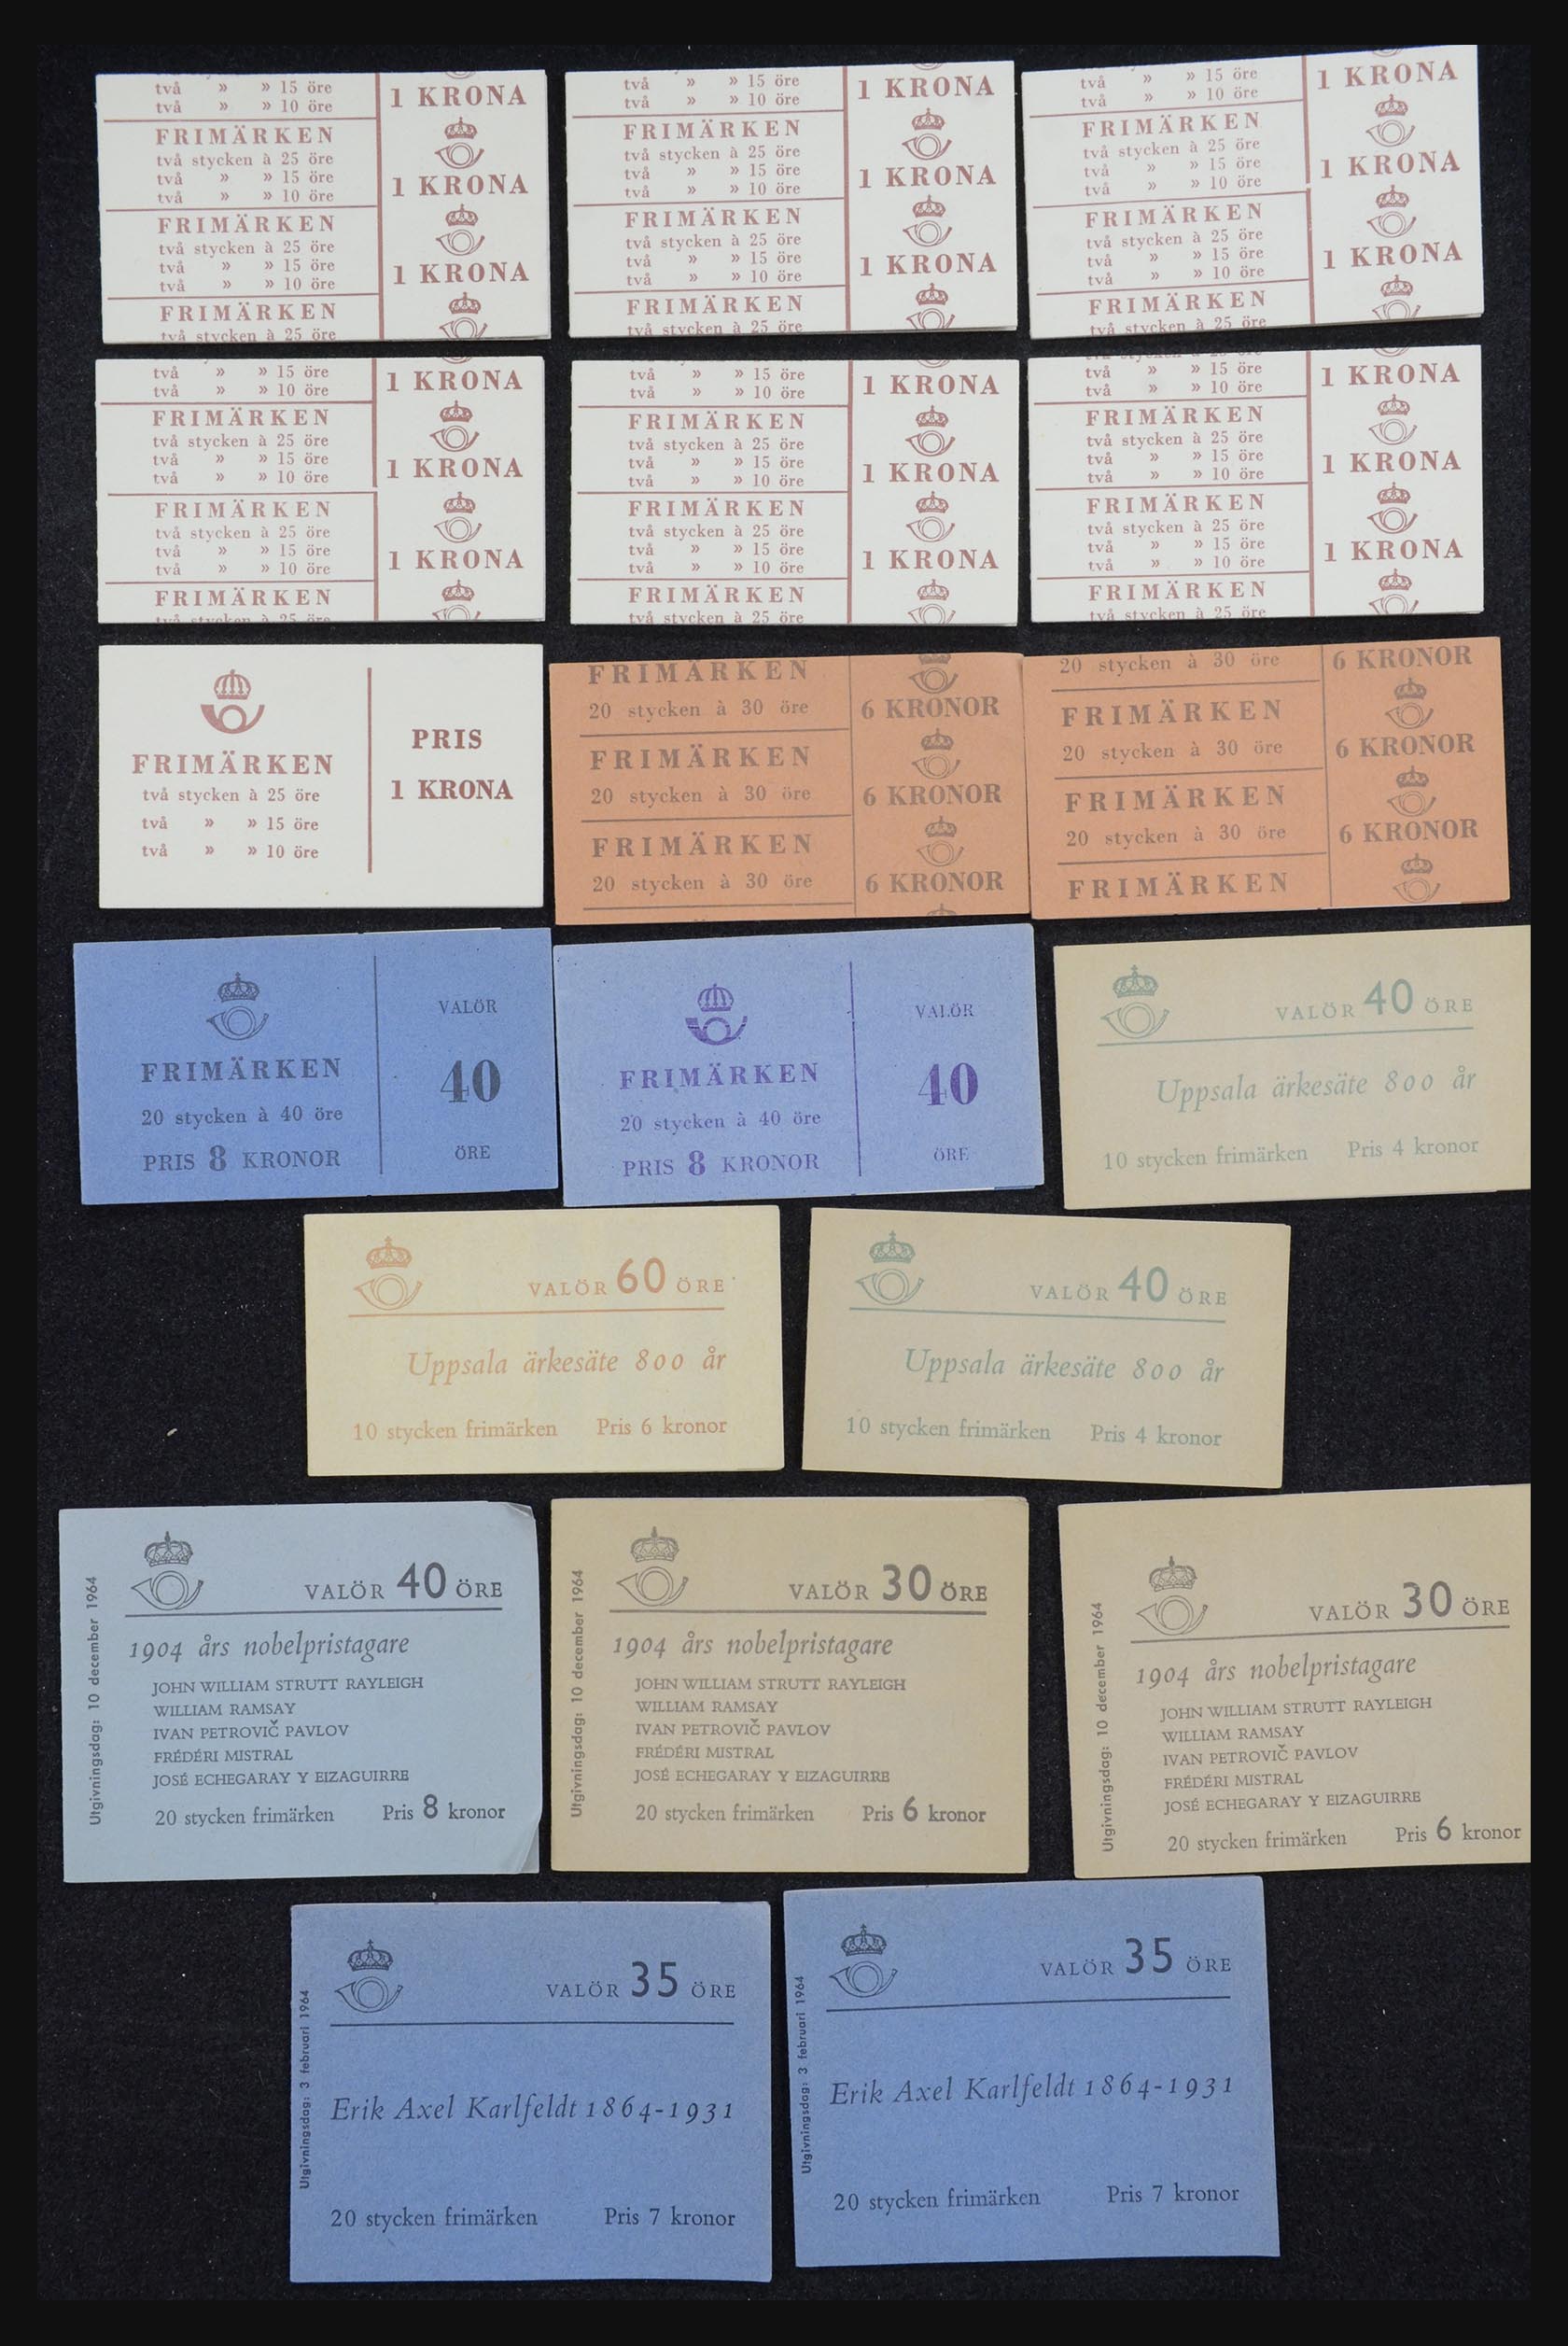 32026 005 - 32026 Sweden stampbooklets 1949-1990.